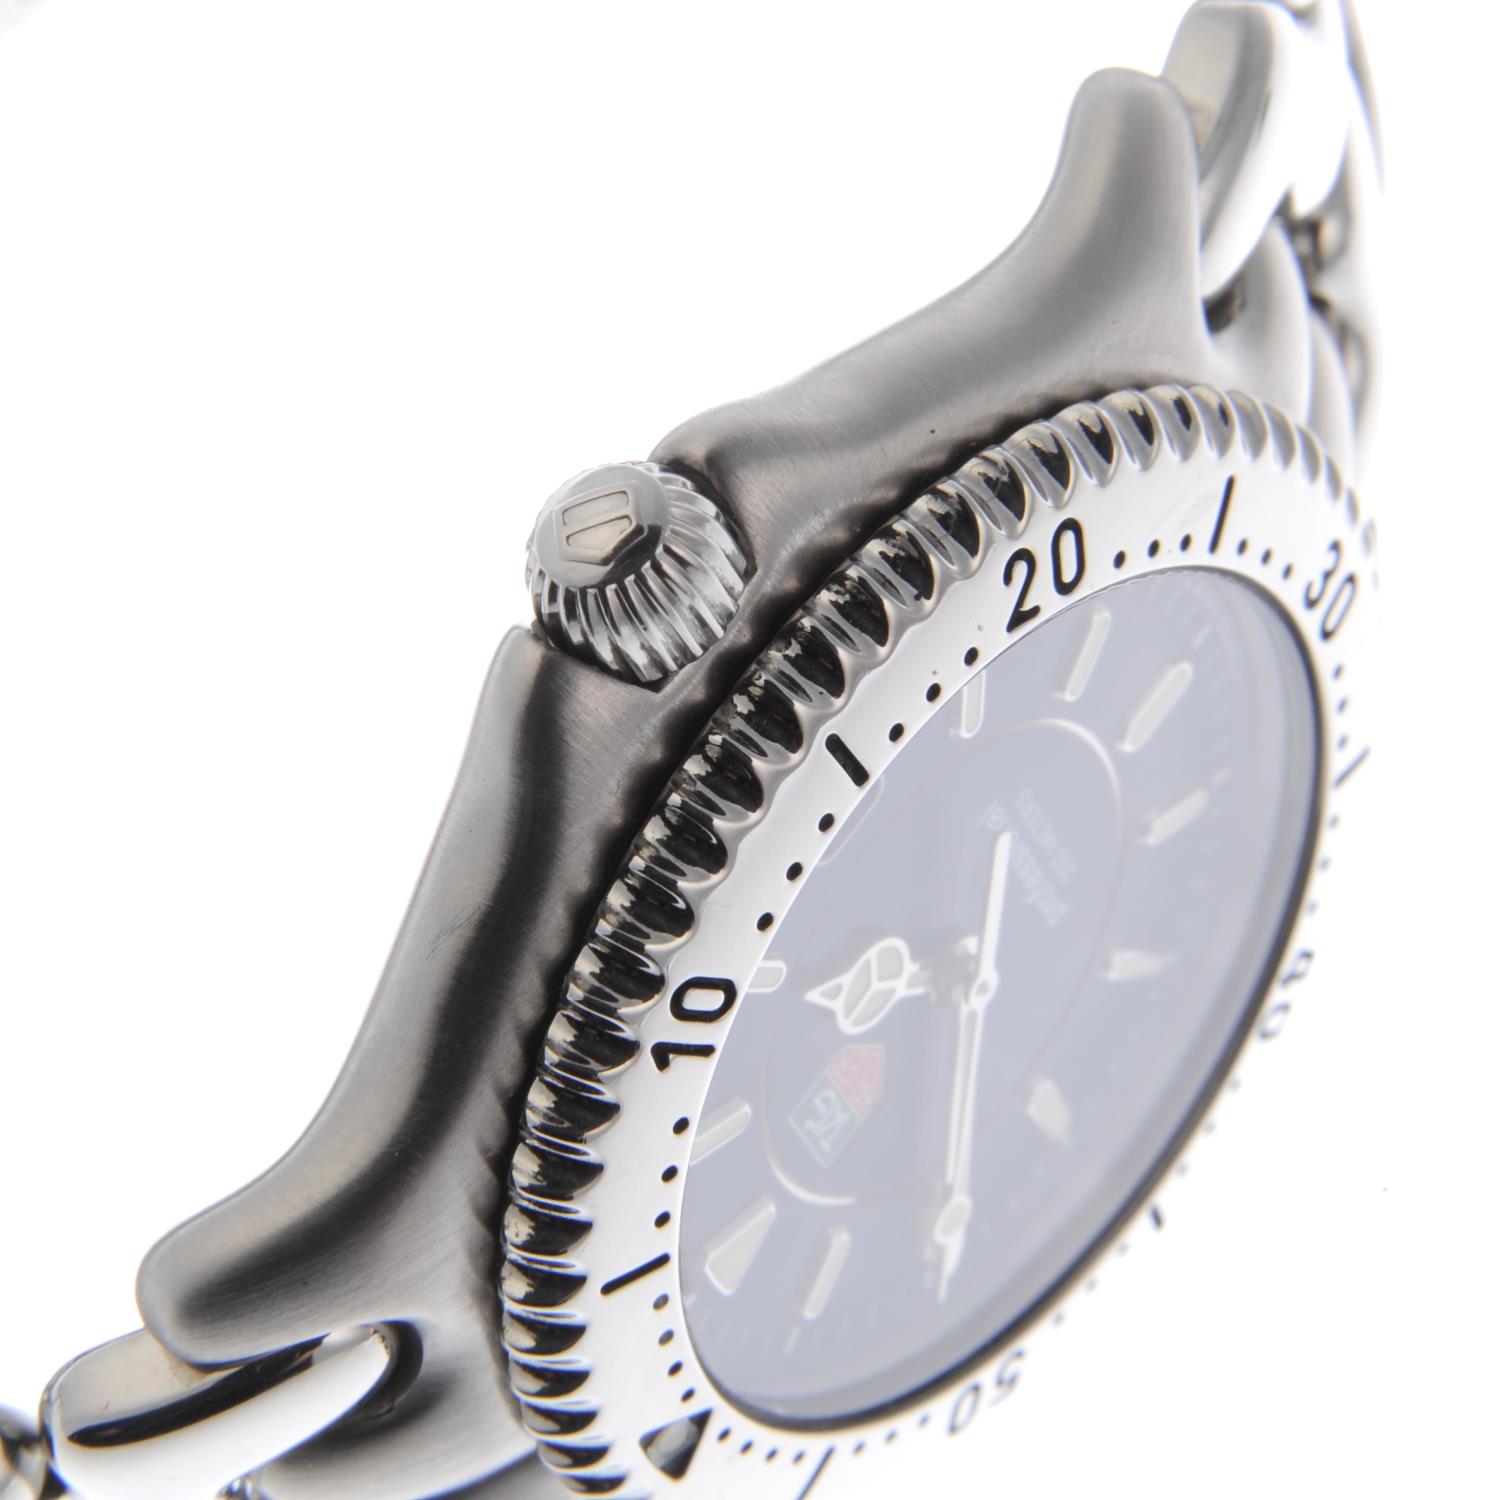 TAG HEUER - a gentleman's S/el bracelet watch. - Image 3 of 4